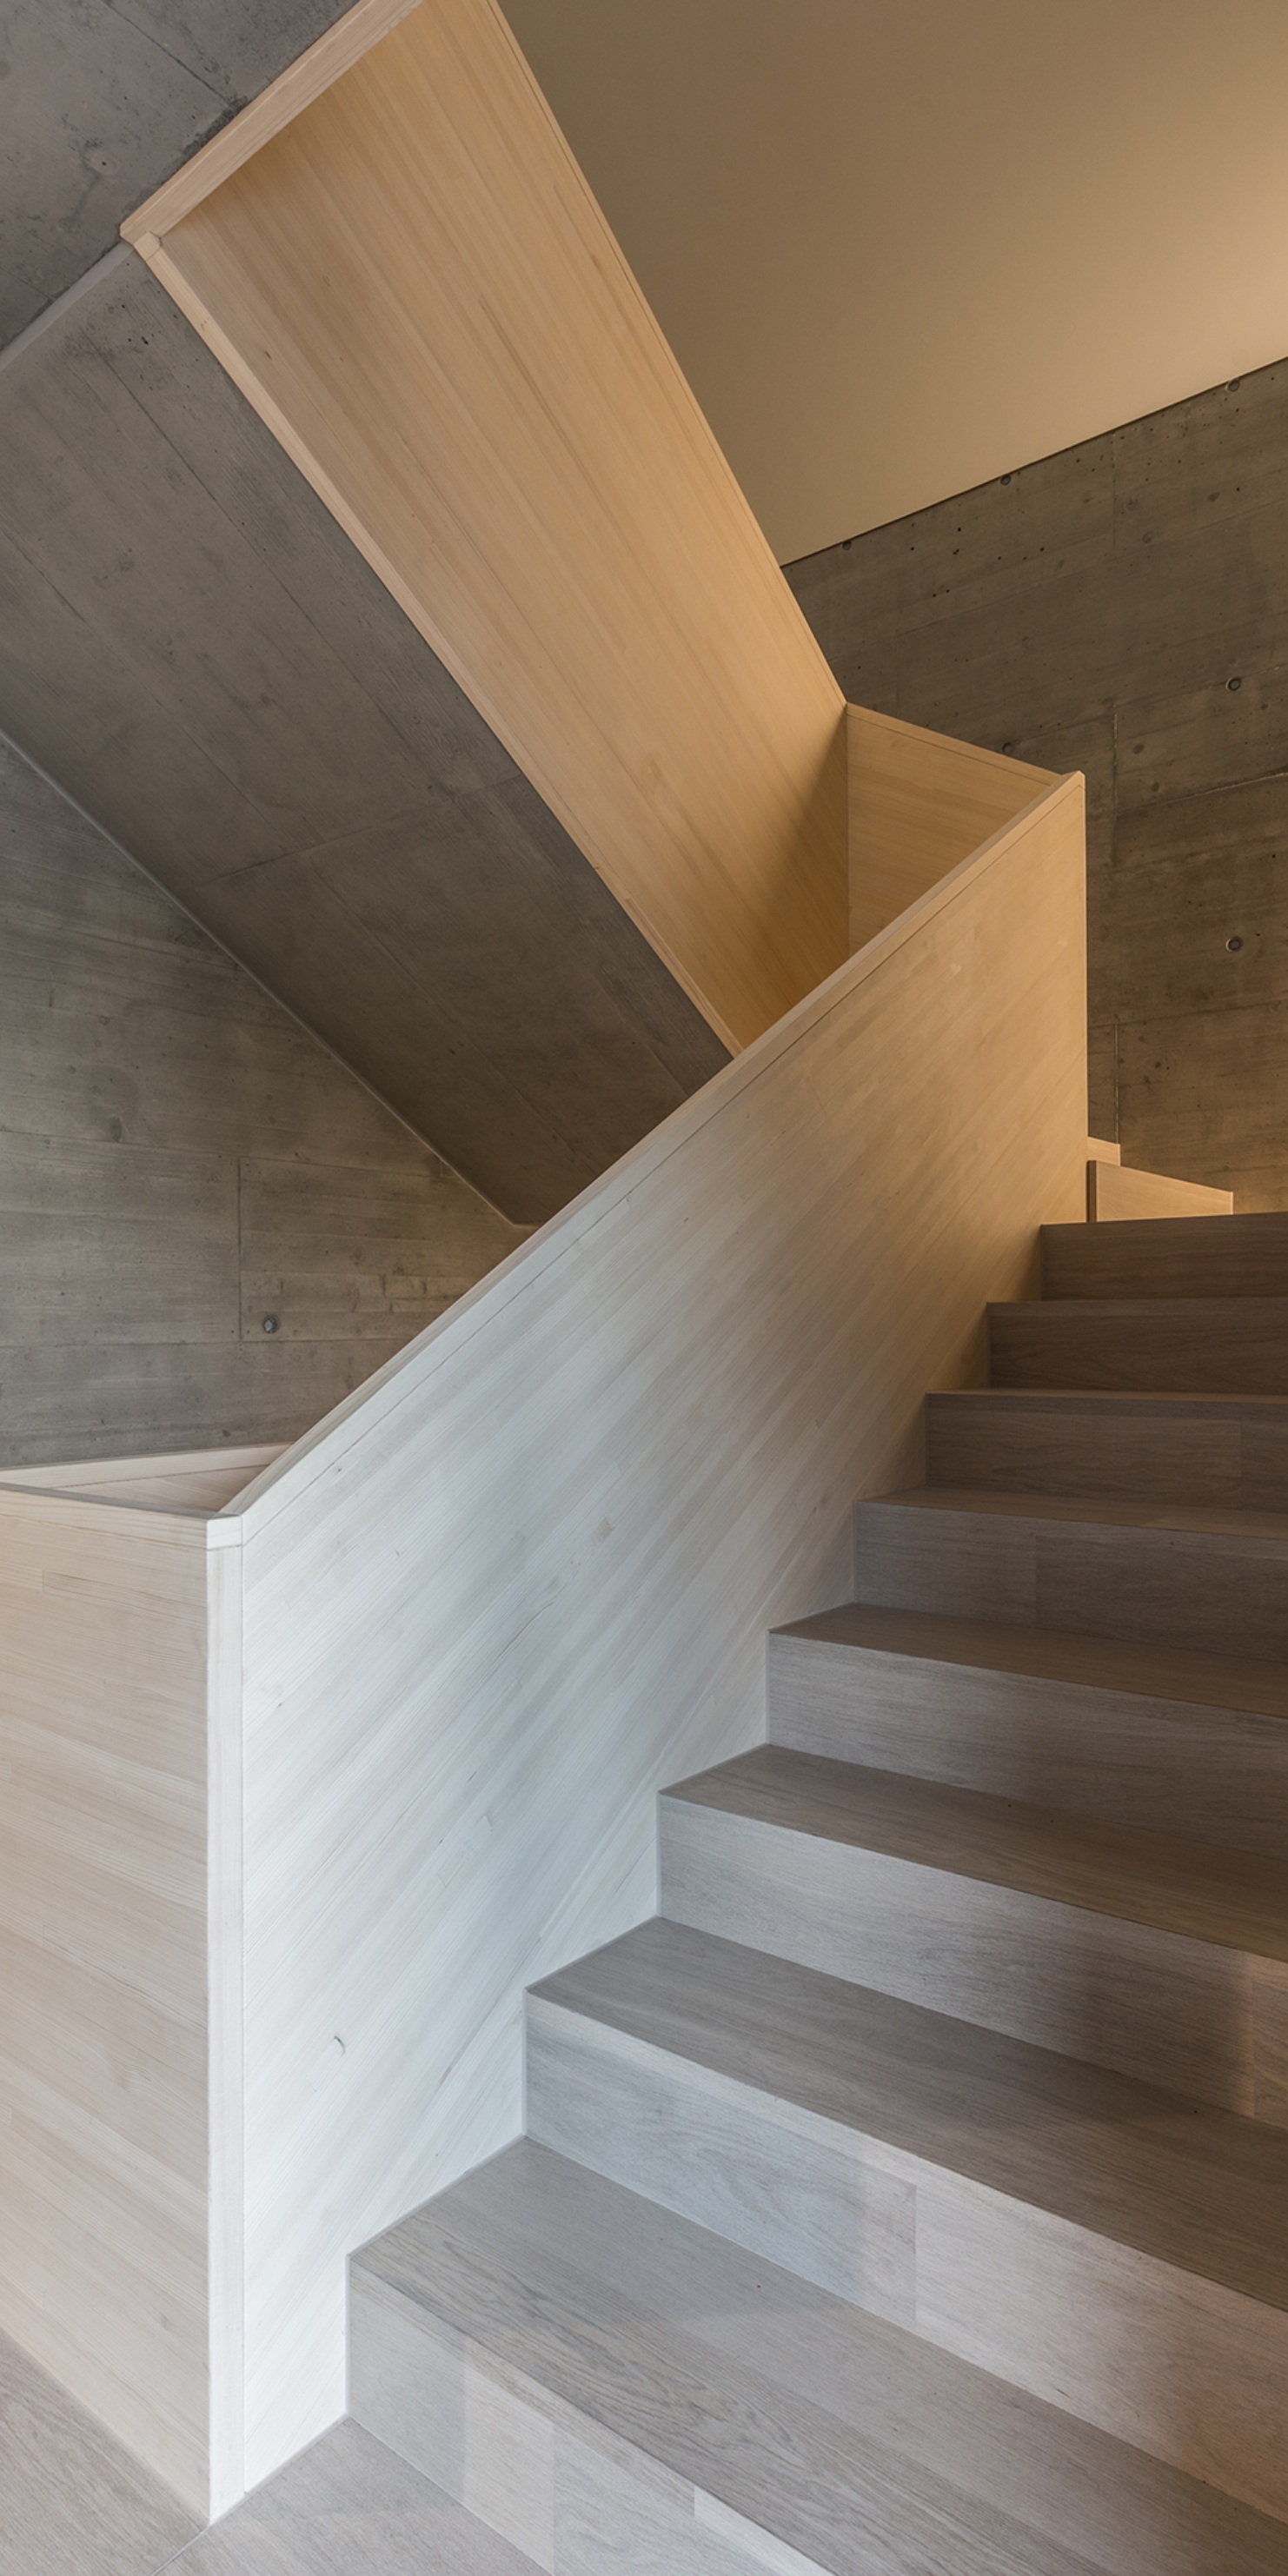 In Kombination mit Beton wurde ein Treppenhaus erstellt, welches schlicht und elegant erscheint.